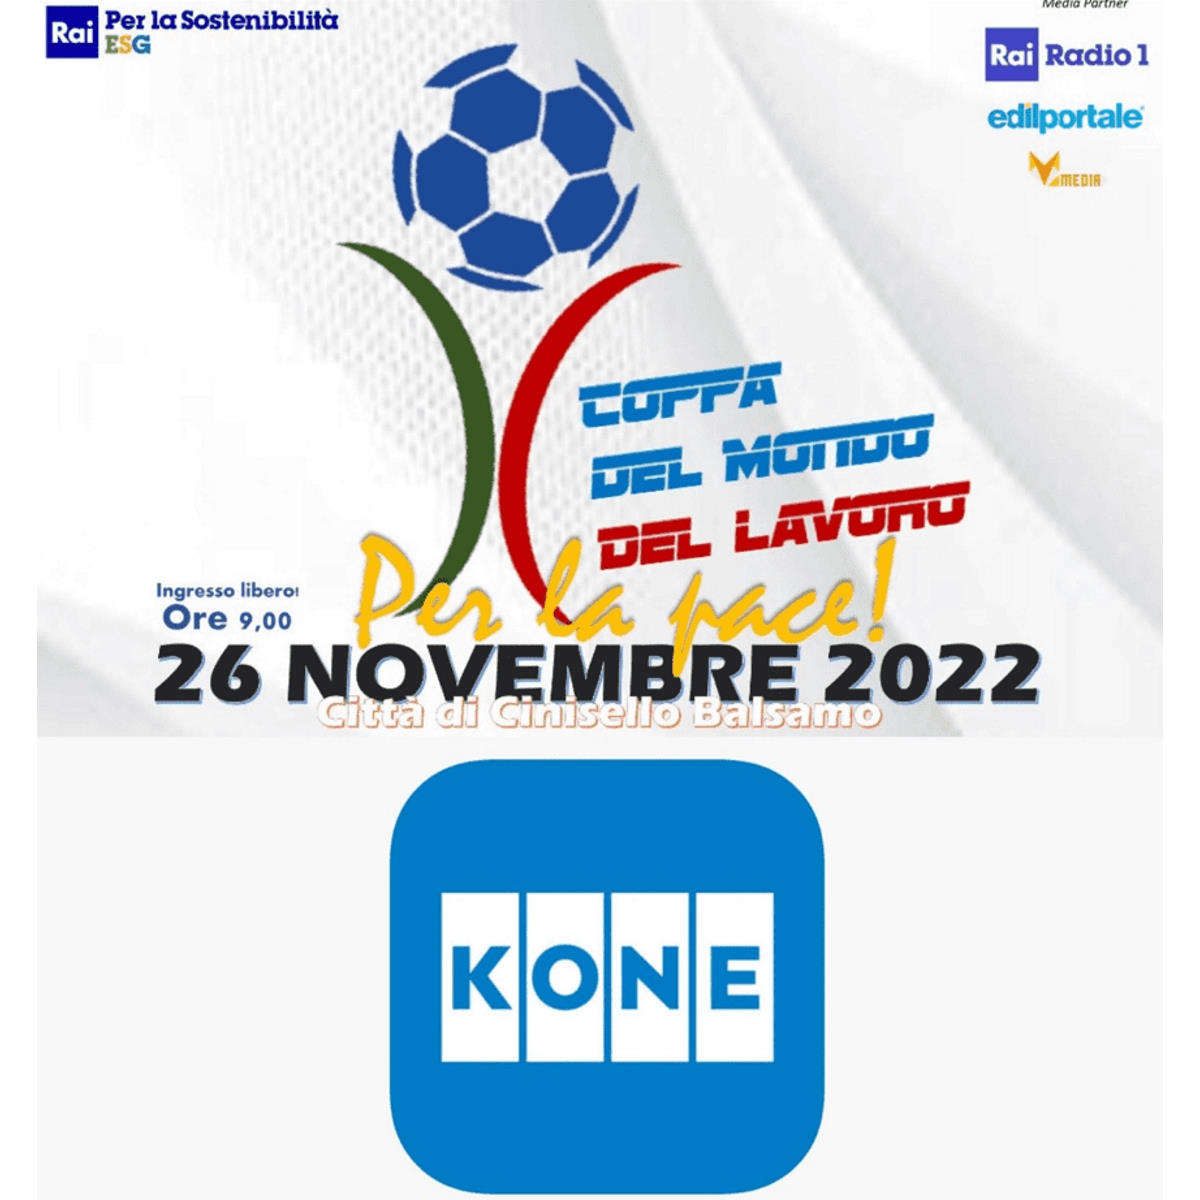 KONE sostiene la Coppa del Mondo del Lavoro 2022 per la Pace!